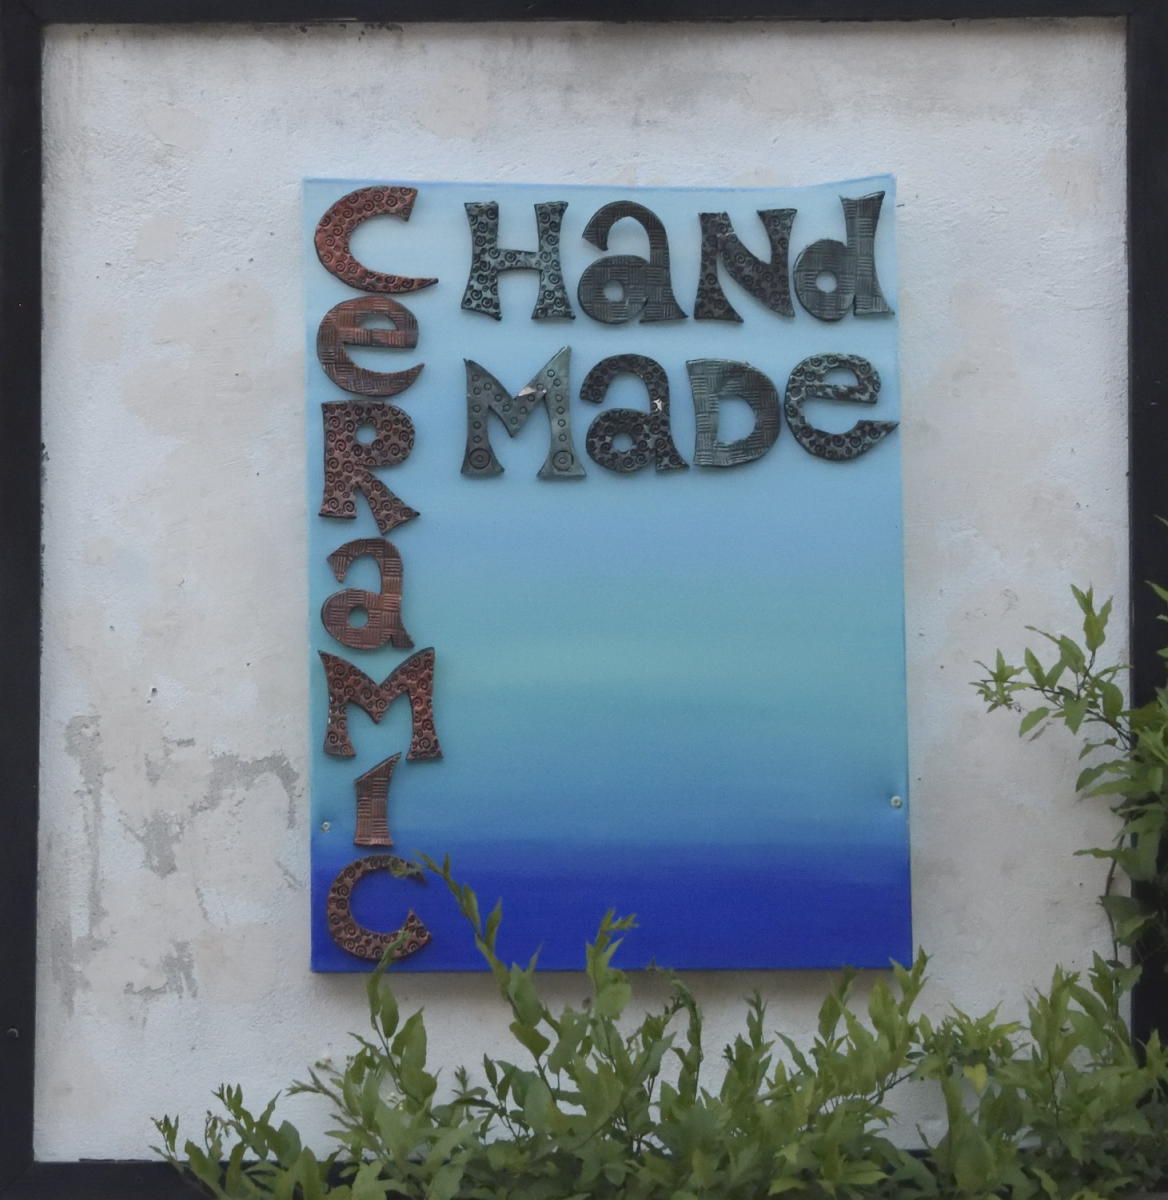 DSC_5085_1A2 - Hand Made Ceramics (Rovinj)